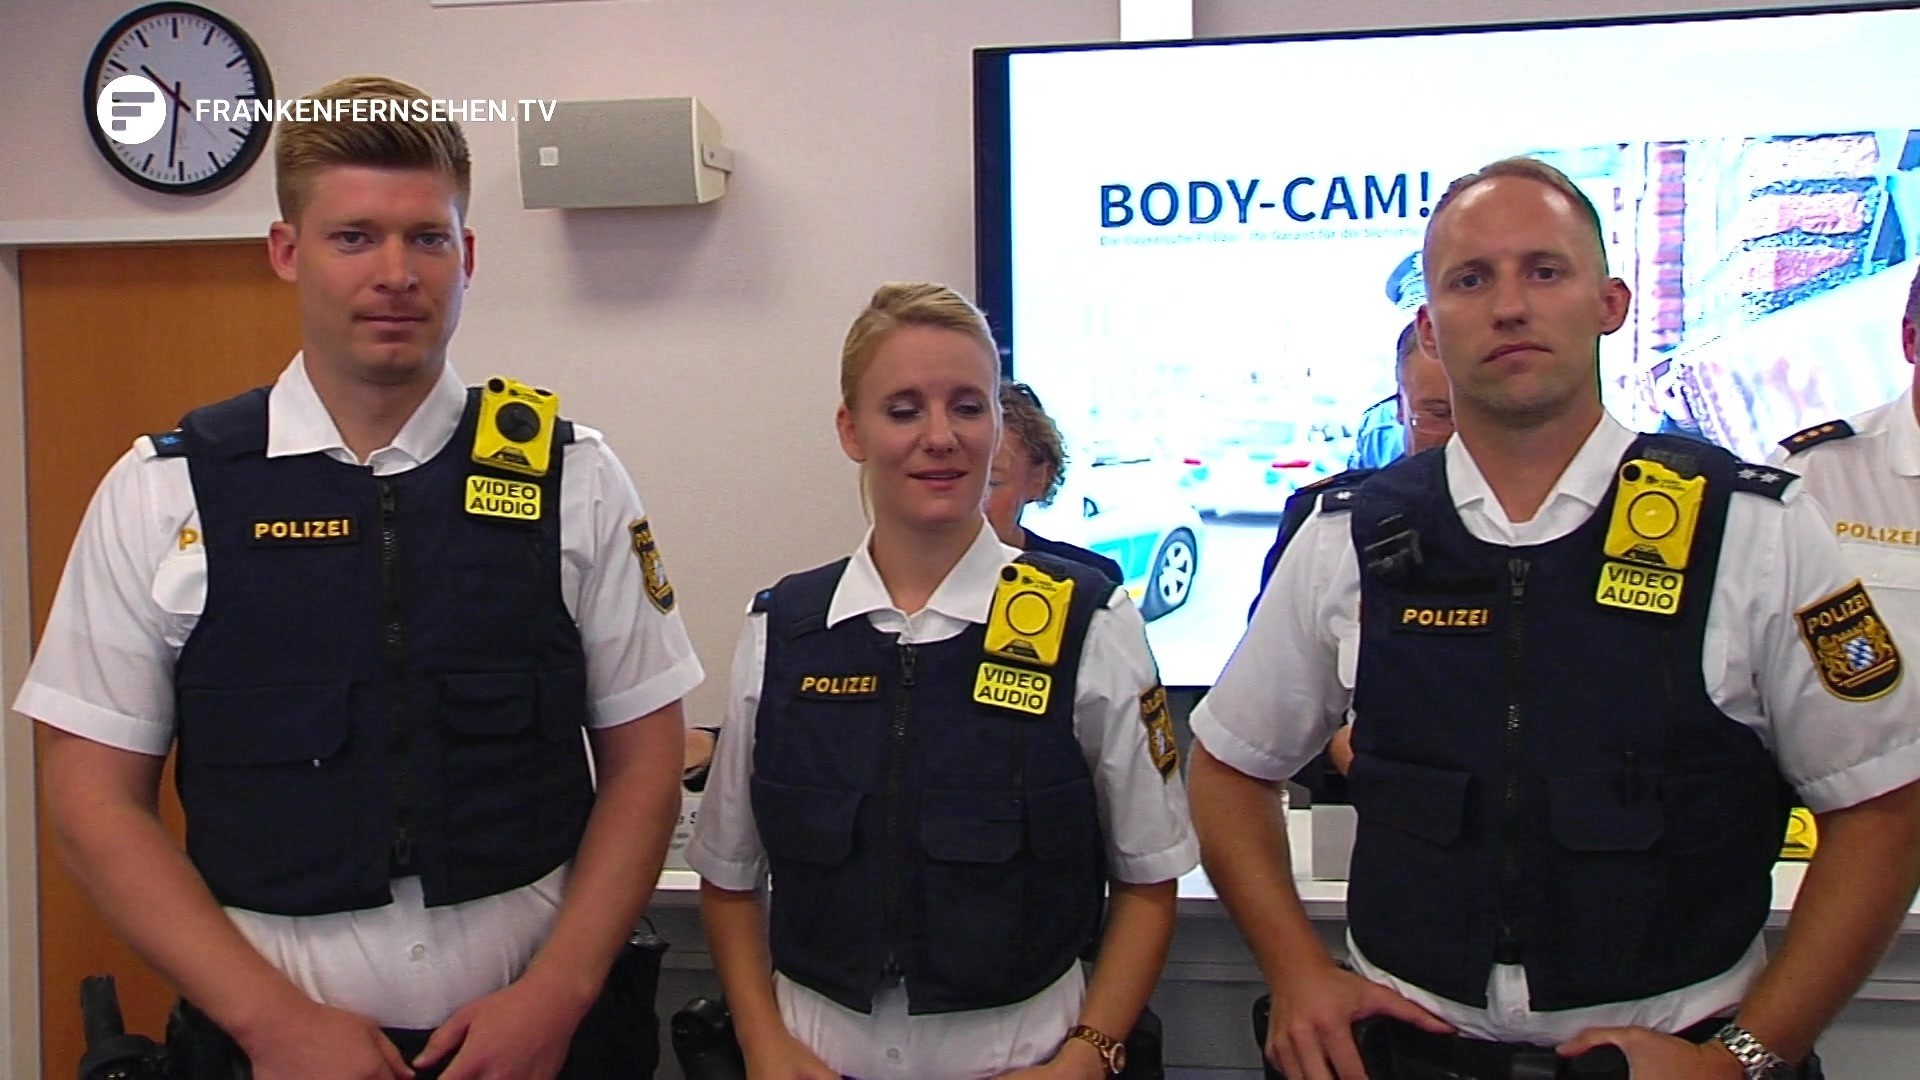 Fur Mehr Sicherheit In Der Region Neue Bodycams Fur Polizisten Franken Fernsehen